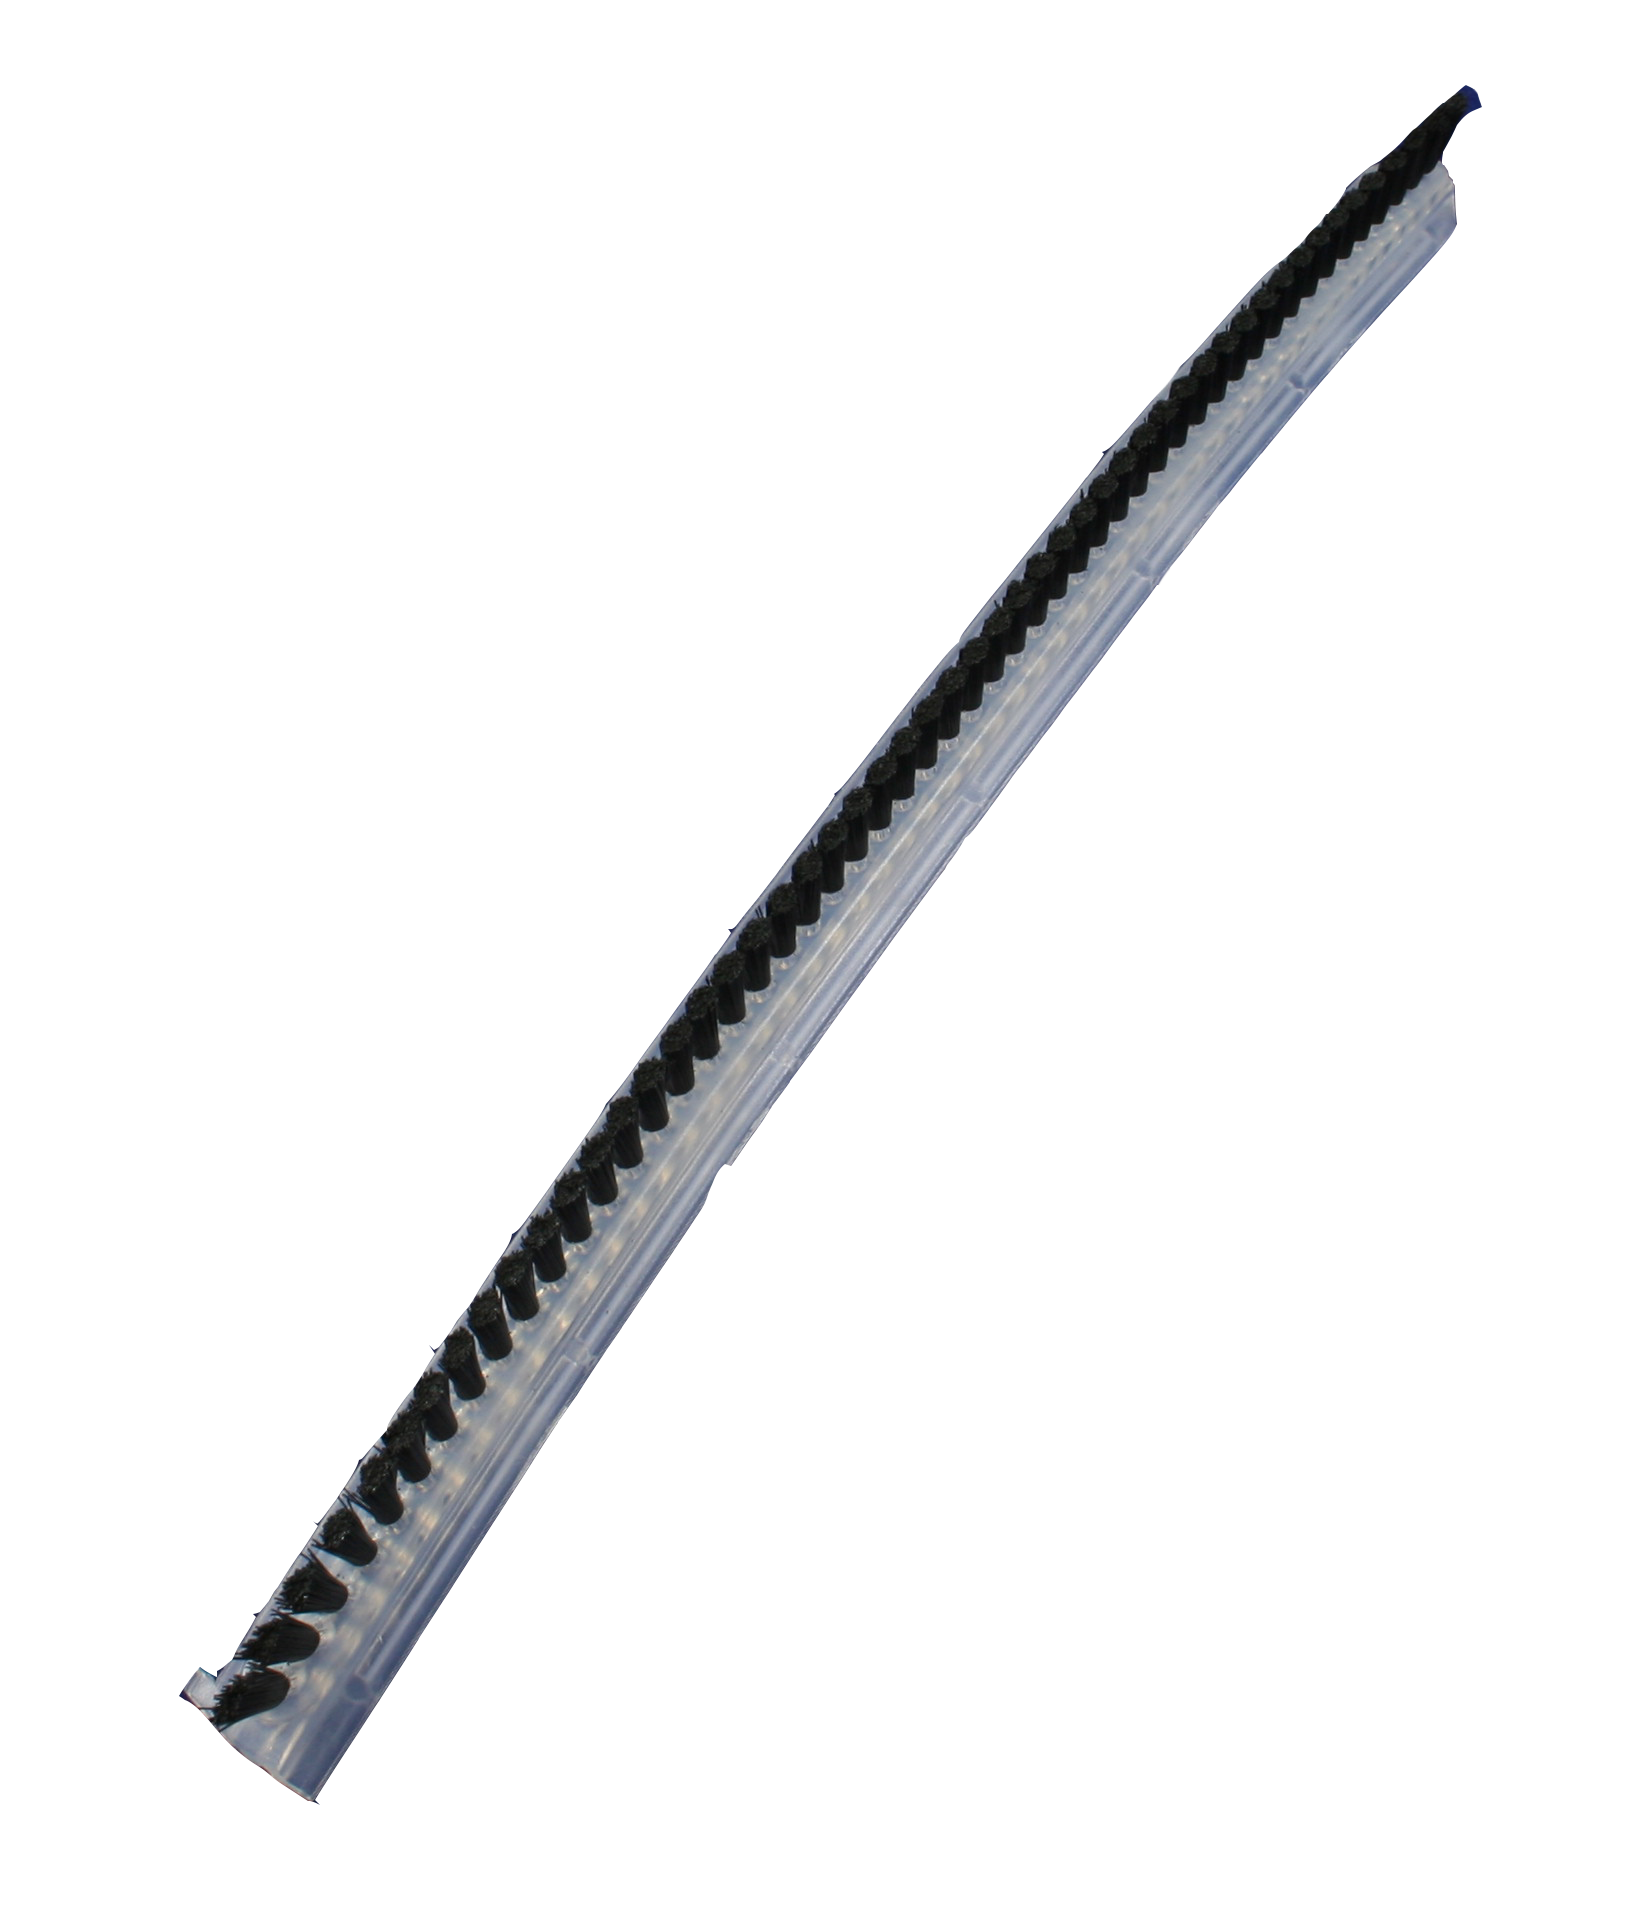 Brush Strip, 14 inch - 86002440